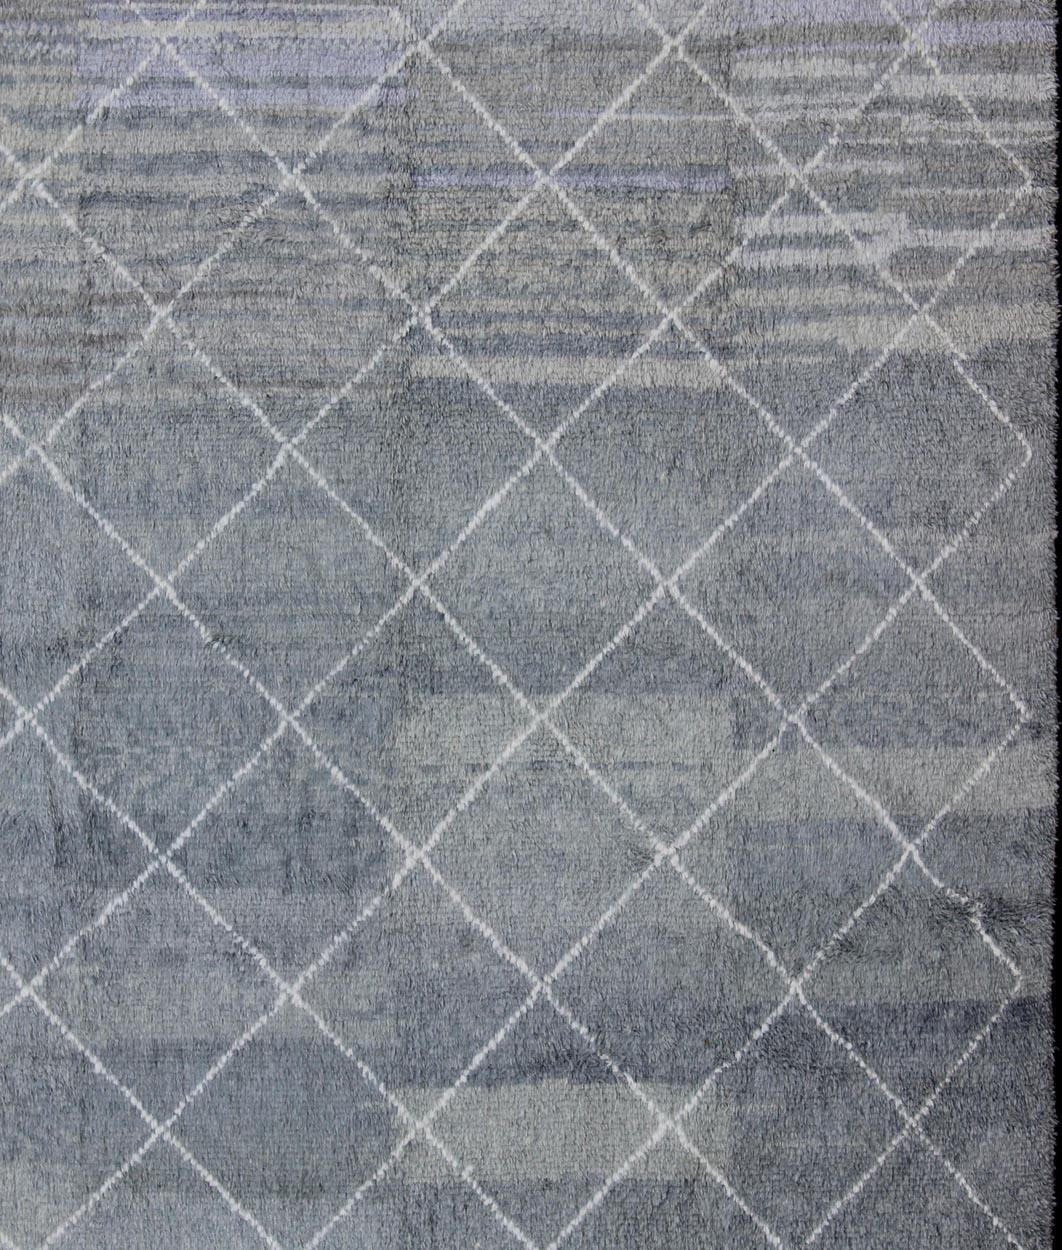 Moderner marokkanischer Teppich mit Allover-Gittermuster in Creme und Grau, Teppich TU-ALG-29, Herkunftsland / Art: Türkei / Stammesmuster

Dieser marokkanische/Tulu-Stammesteppich mit modernem Design in einem Gittermuster ist in Grau und Creme